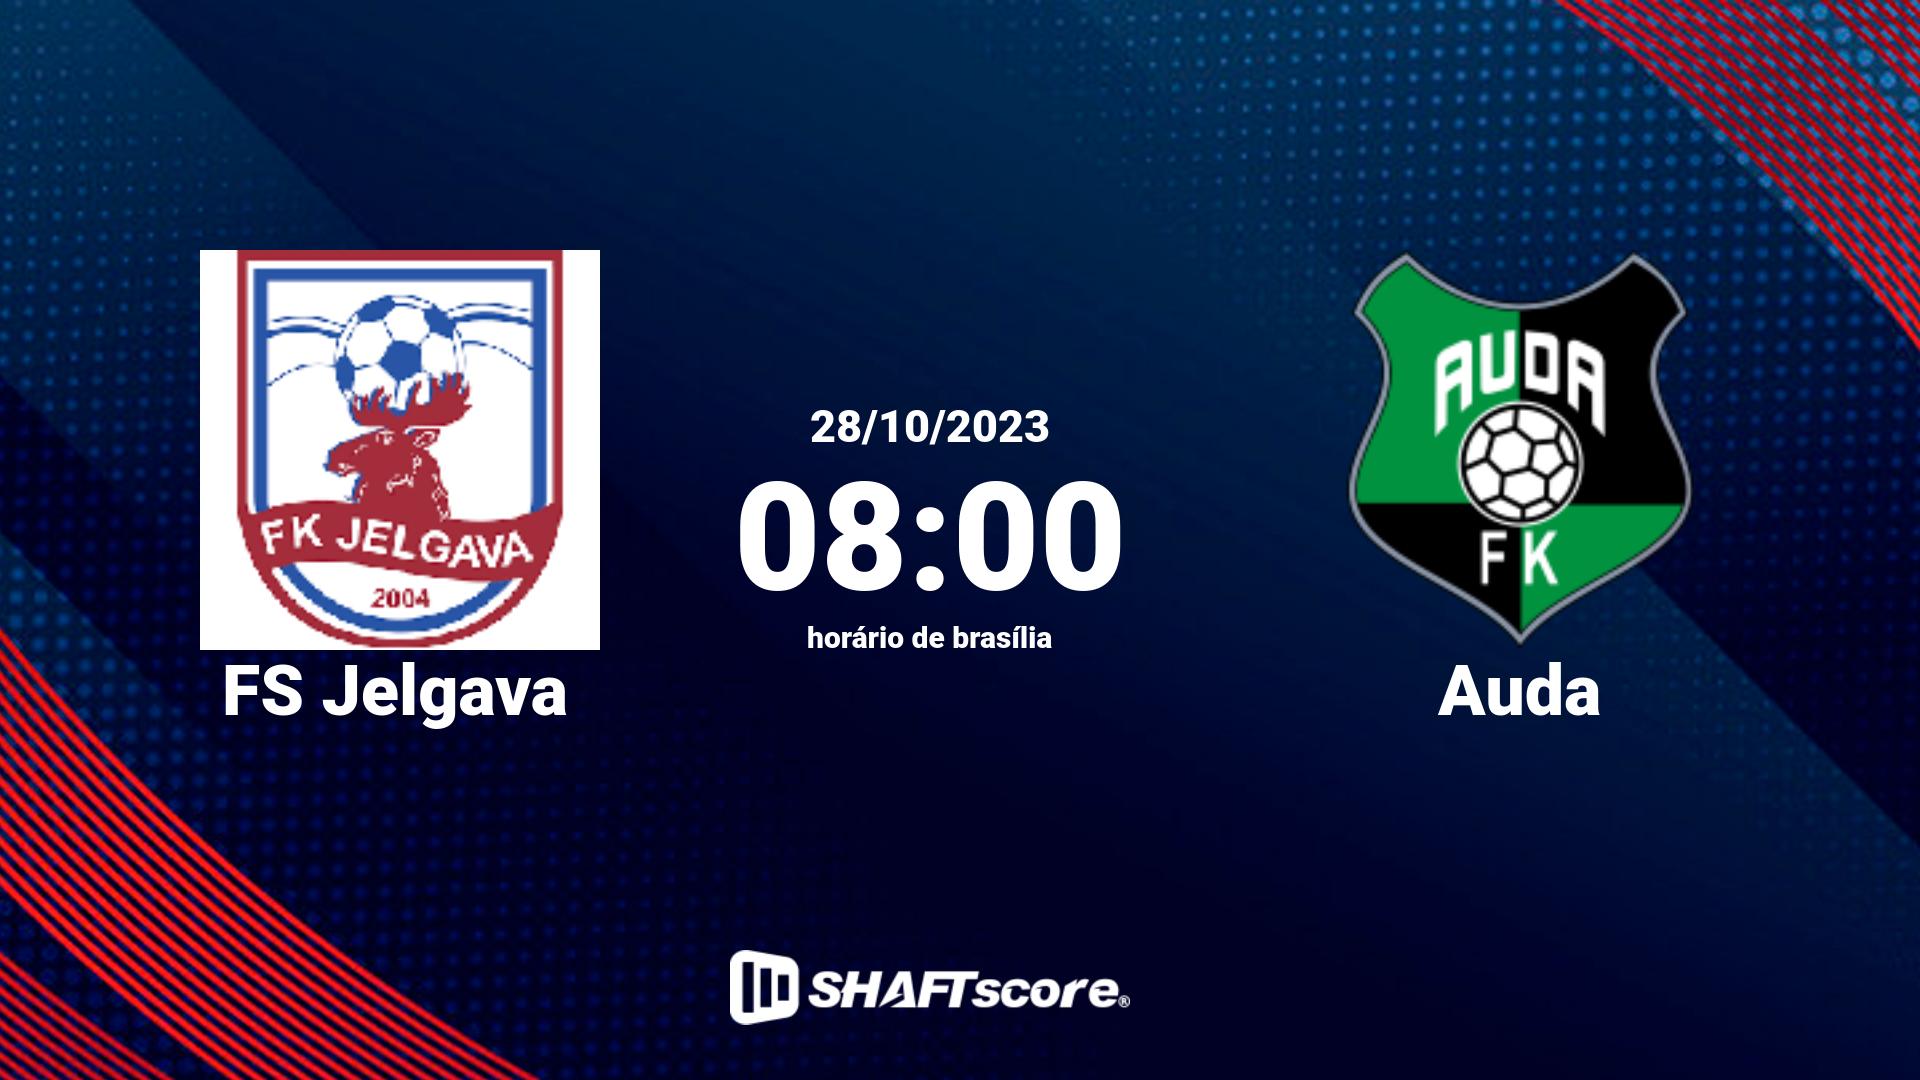 Estatísticas do jogo FS Jelgava vs Auda 28.10 08:00